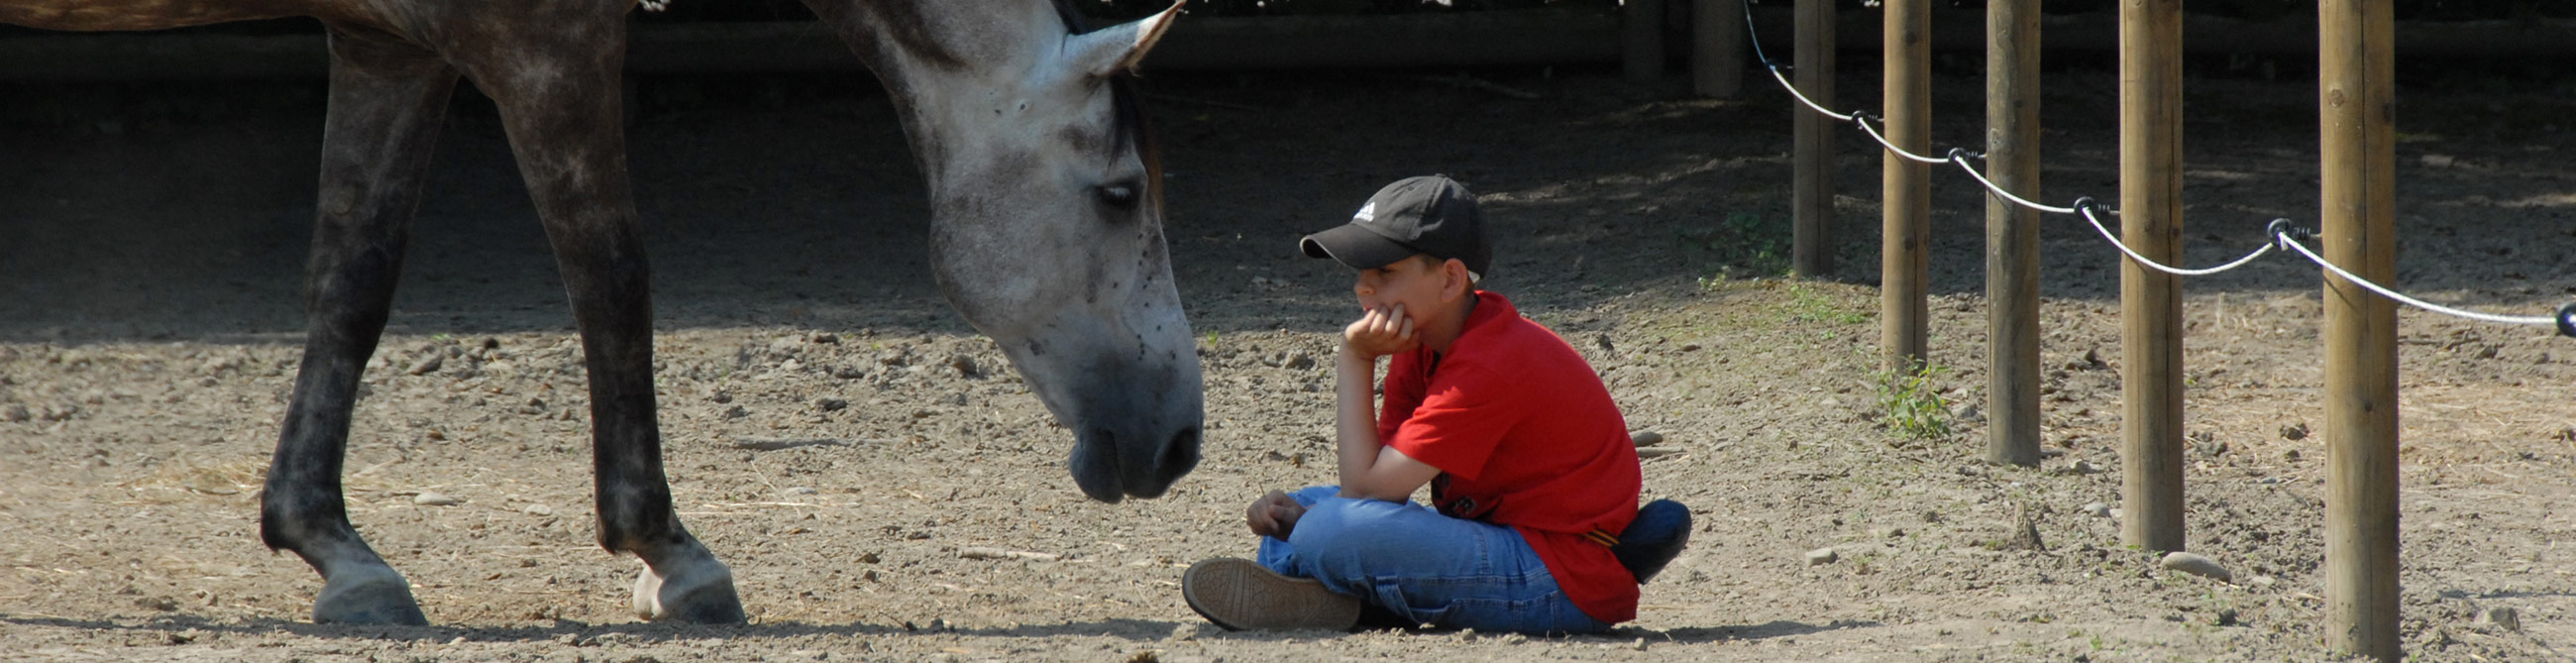 accompagnement enfants avec chevaux coaching enfants et adolescents chevaux suisse romande